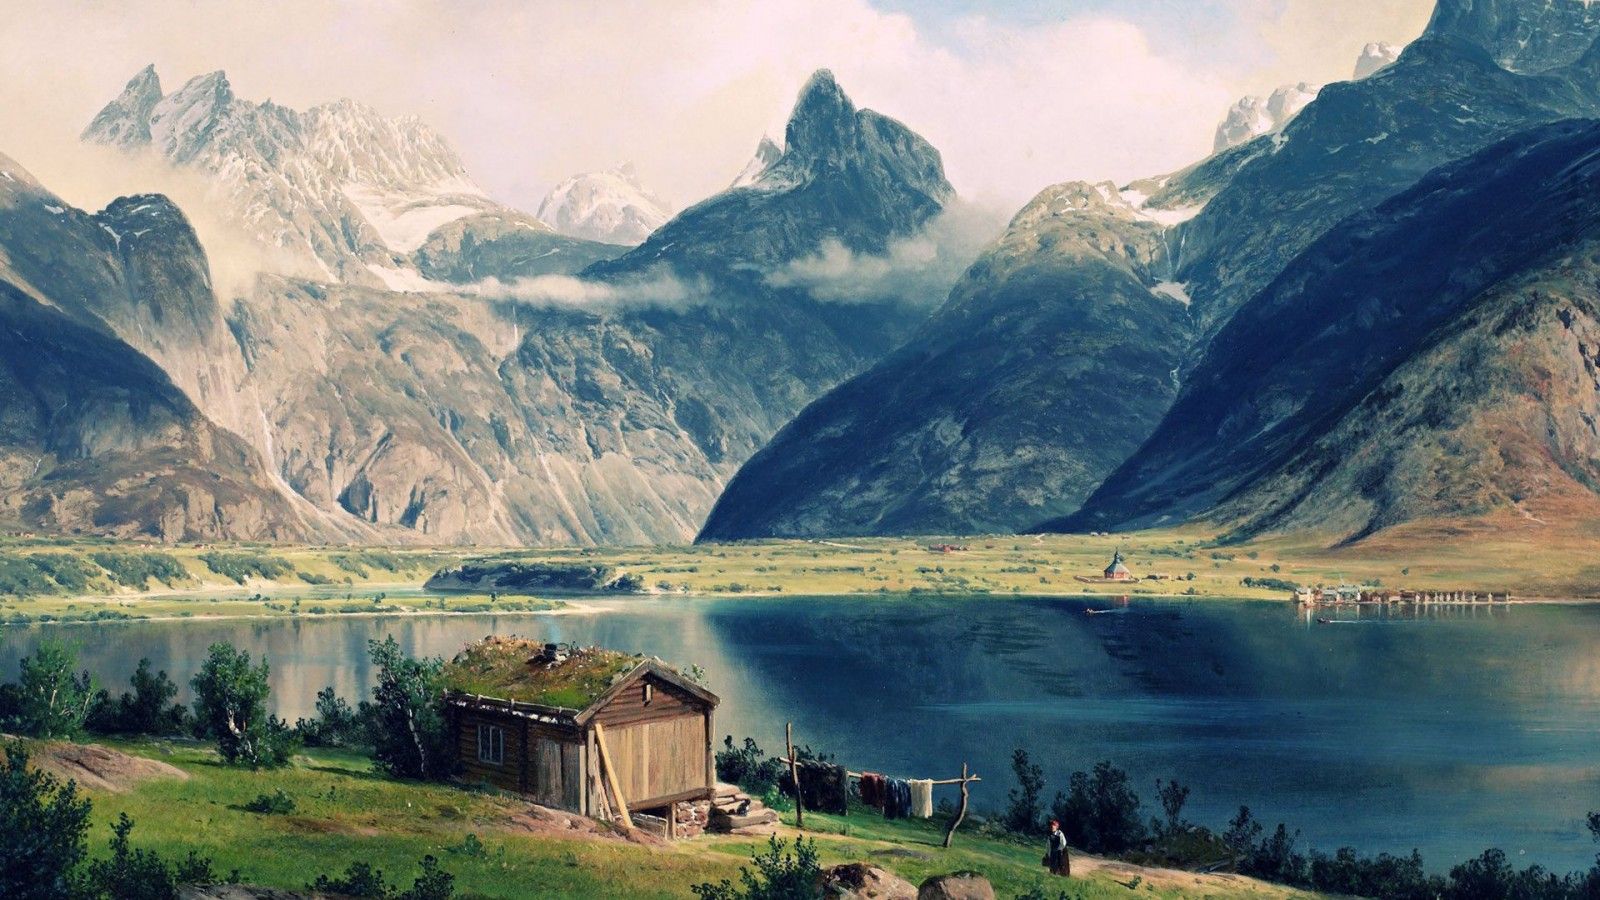 طبیعت بکر کنار دریاچه در منطقه اسکاندیناوی به عنوان پروفایل